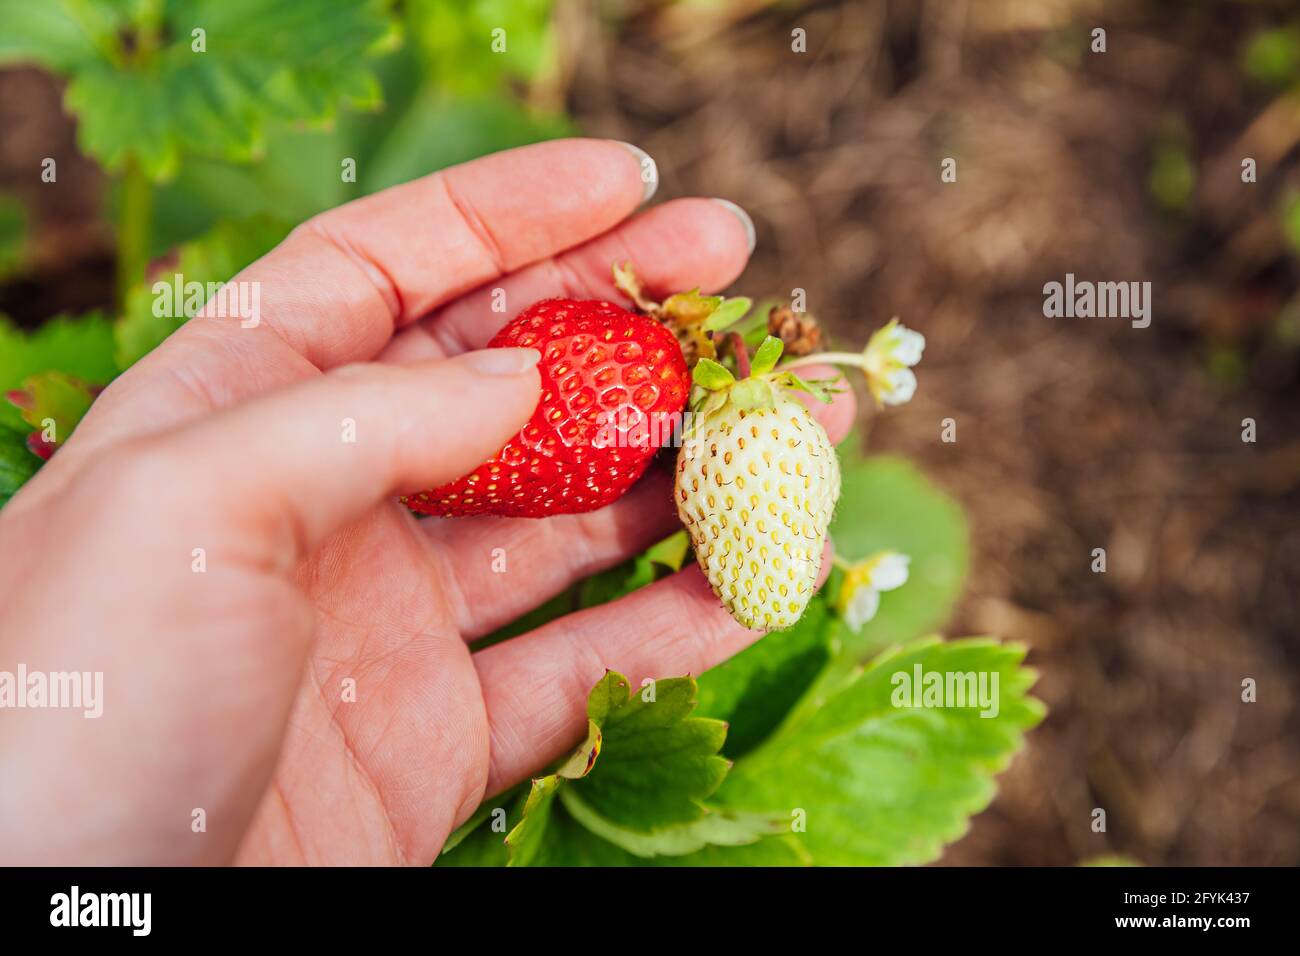 Garten- und Landwirtschaftskonzept. Weibliche Landarbeiterin erntet rote frische reife organische Erdbeere im Garten. Veganer Vegetarier hausgemüse Essen pr Stockfoto